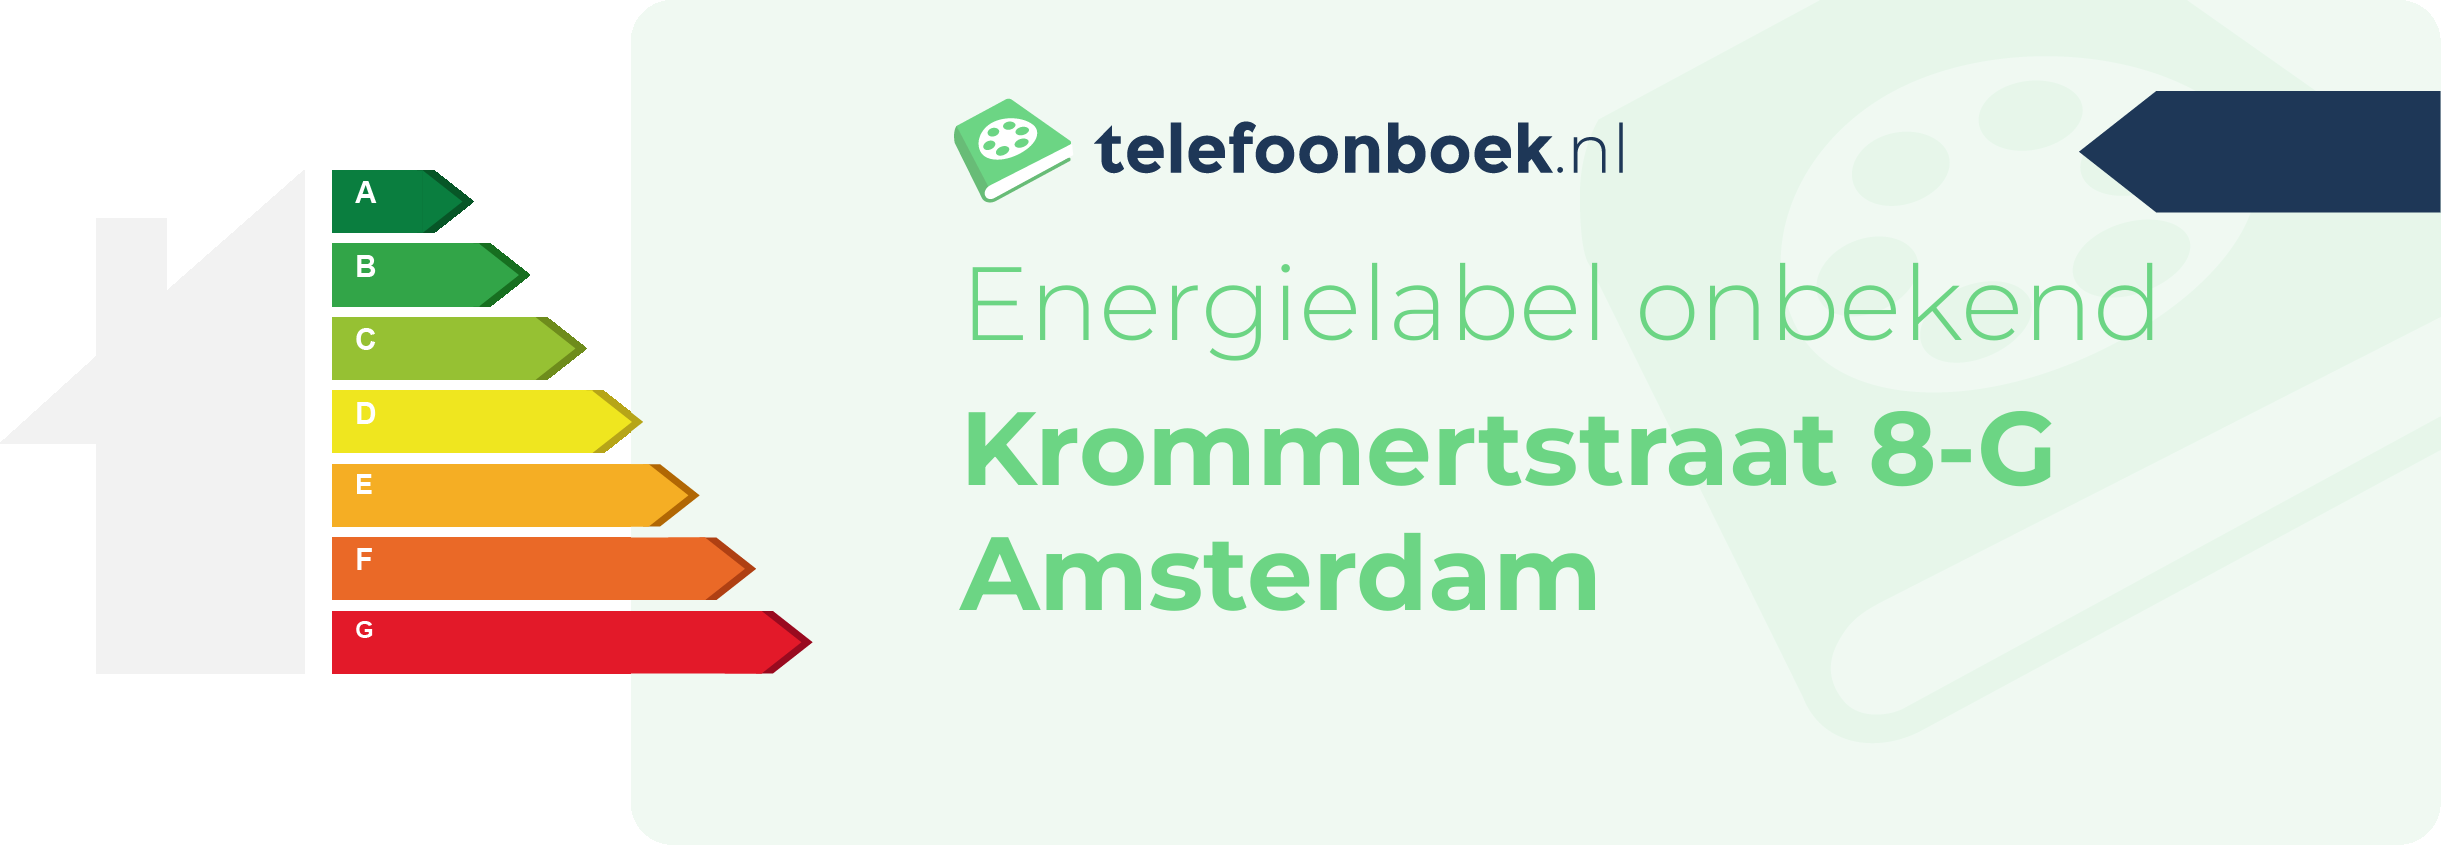 Energielabel Krommertstraat 8-G Amsterdam